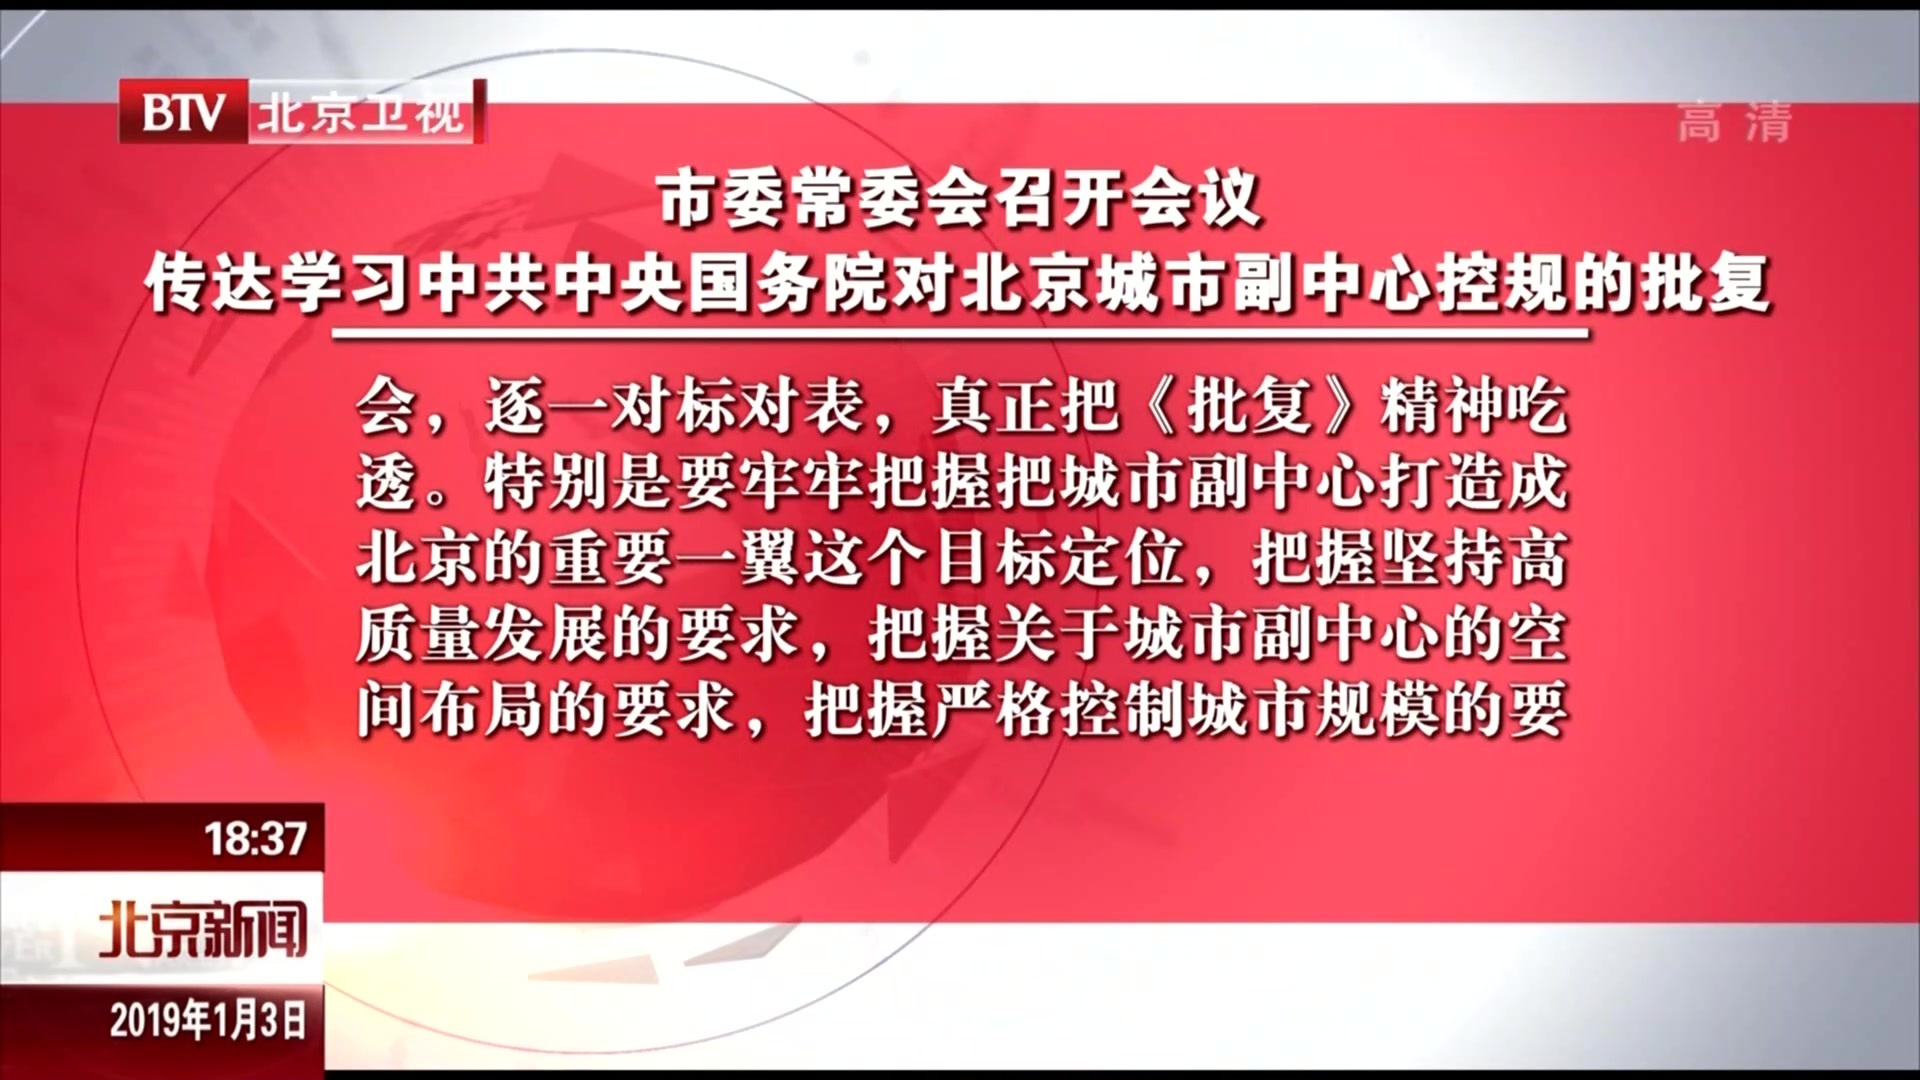 北京市委常委会召开会议  传达学习中共中央国务院对北京城市副中心控规的批复